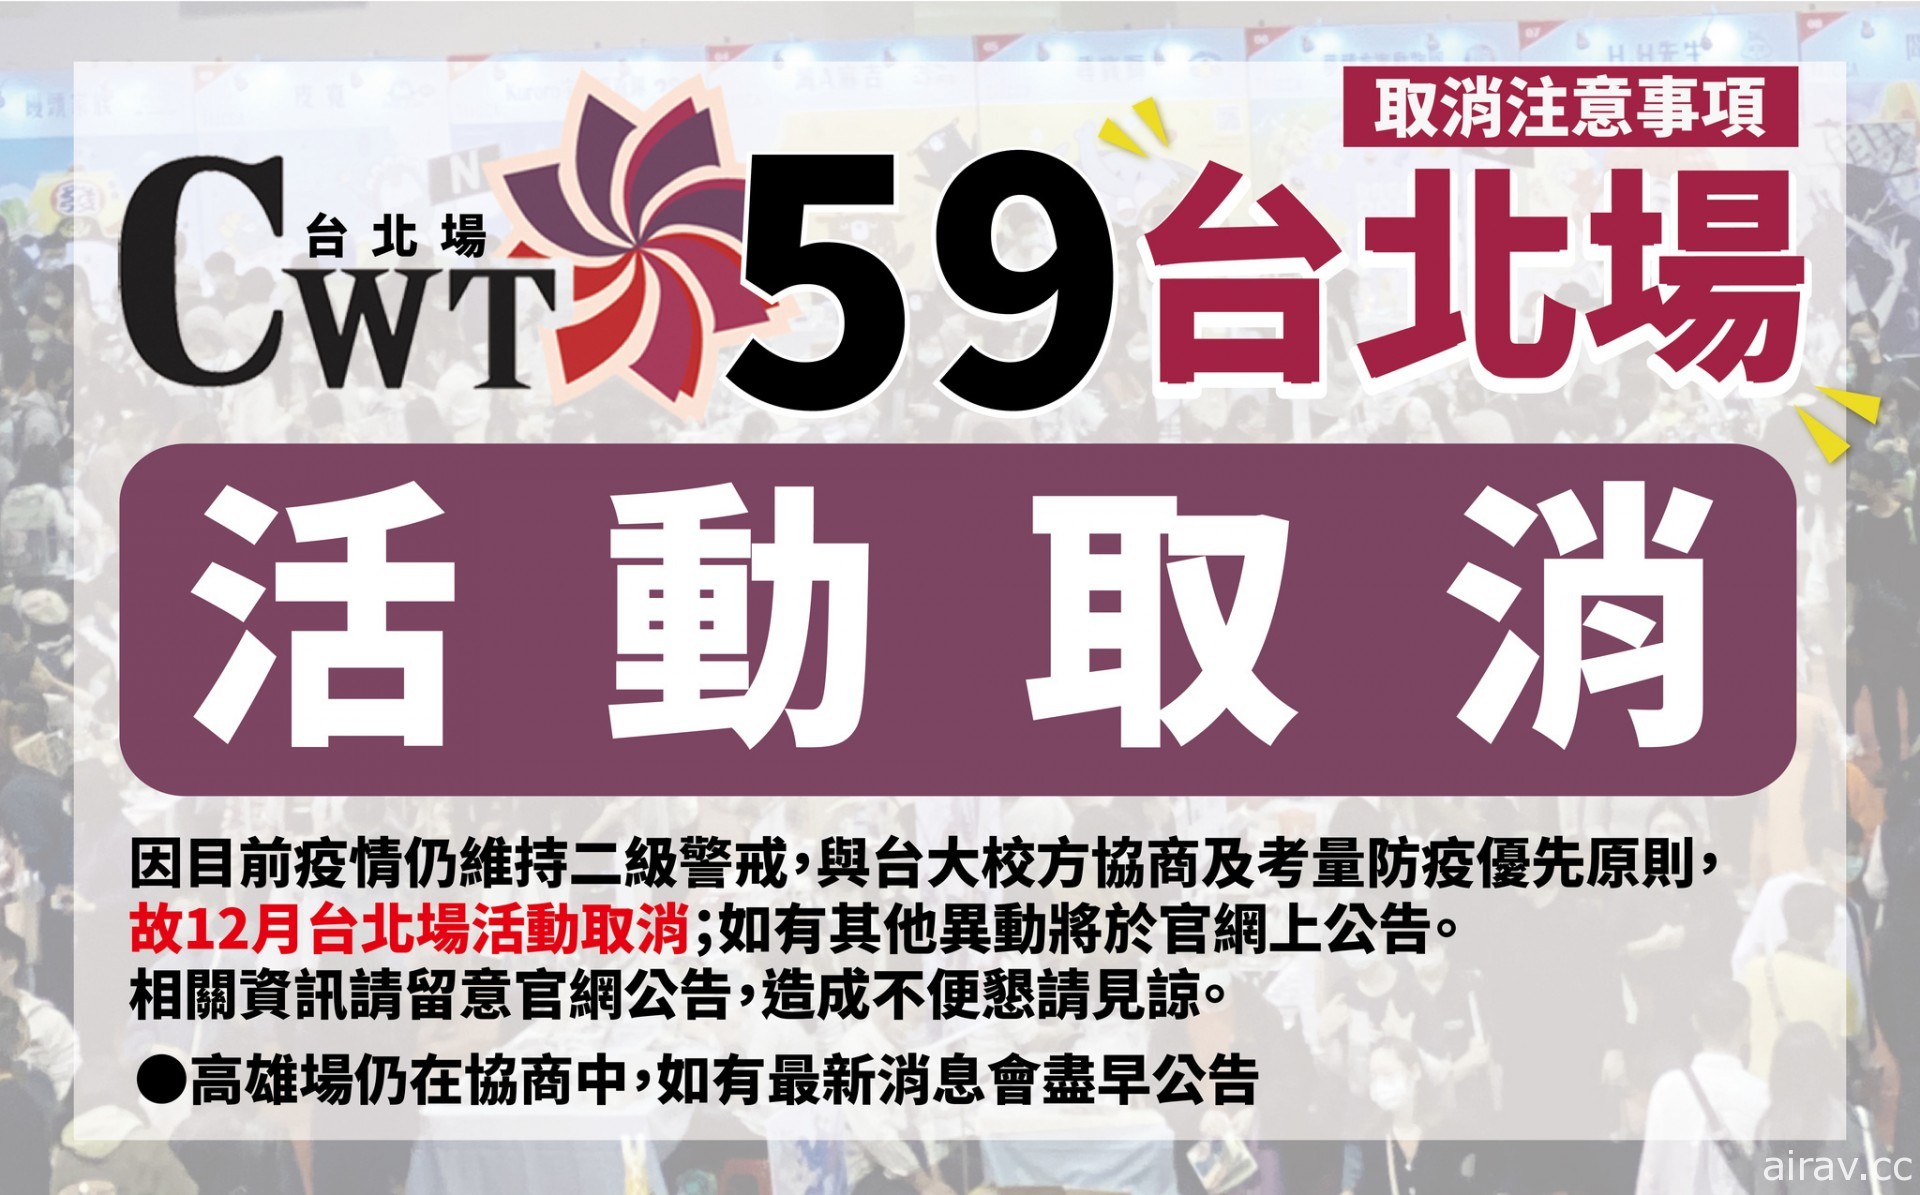 12 月 CWT59 台北同人販售會活動宣布因疫情因素取消舉辦